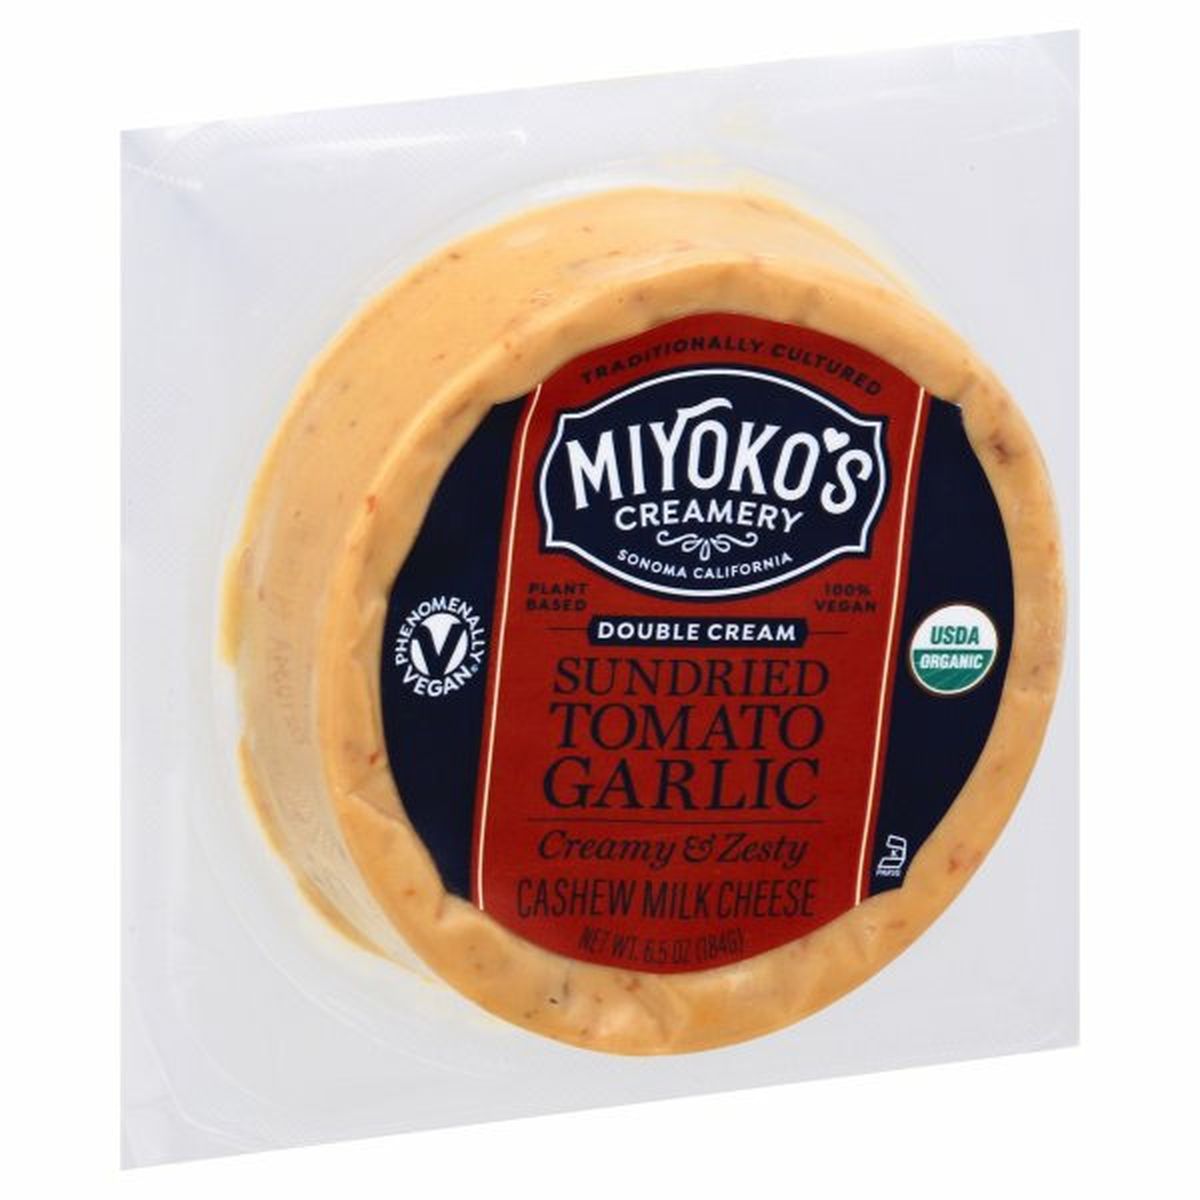 Calories in Miyoko's Creamery Cashew Milk Cheese, Sundried Tomato Garlic, Double Cream